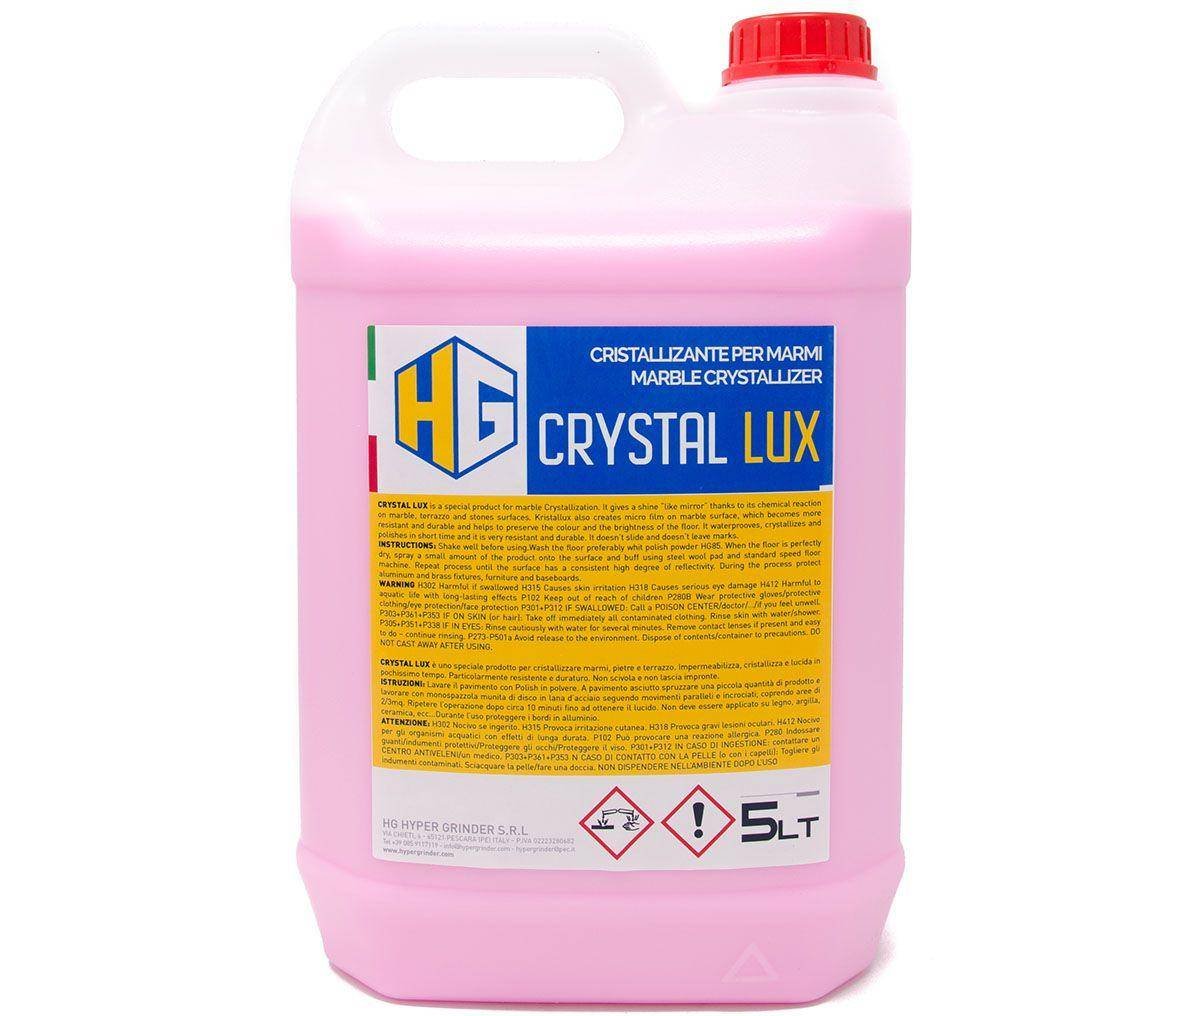 Crystal Lux 5 ltr. - Diverse kemiprodukter - Rent Engros ApS